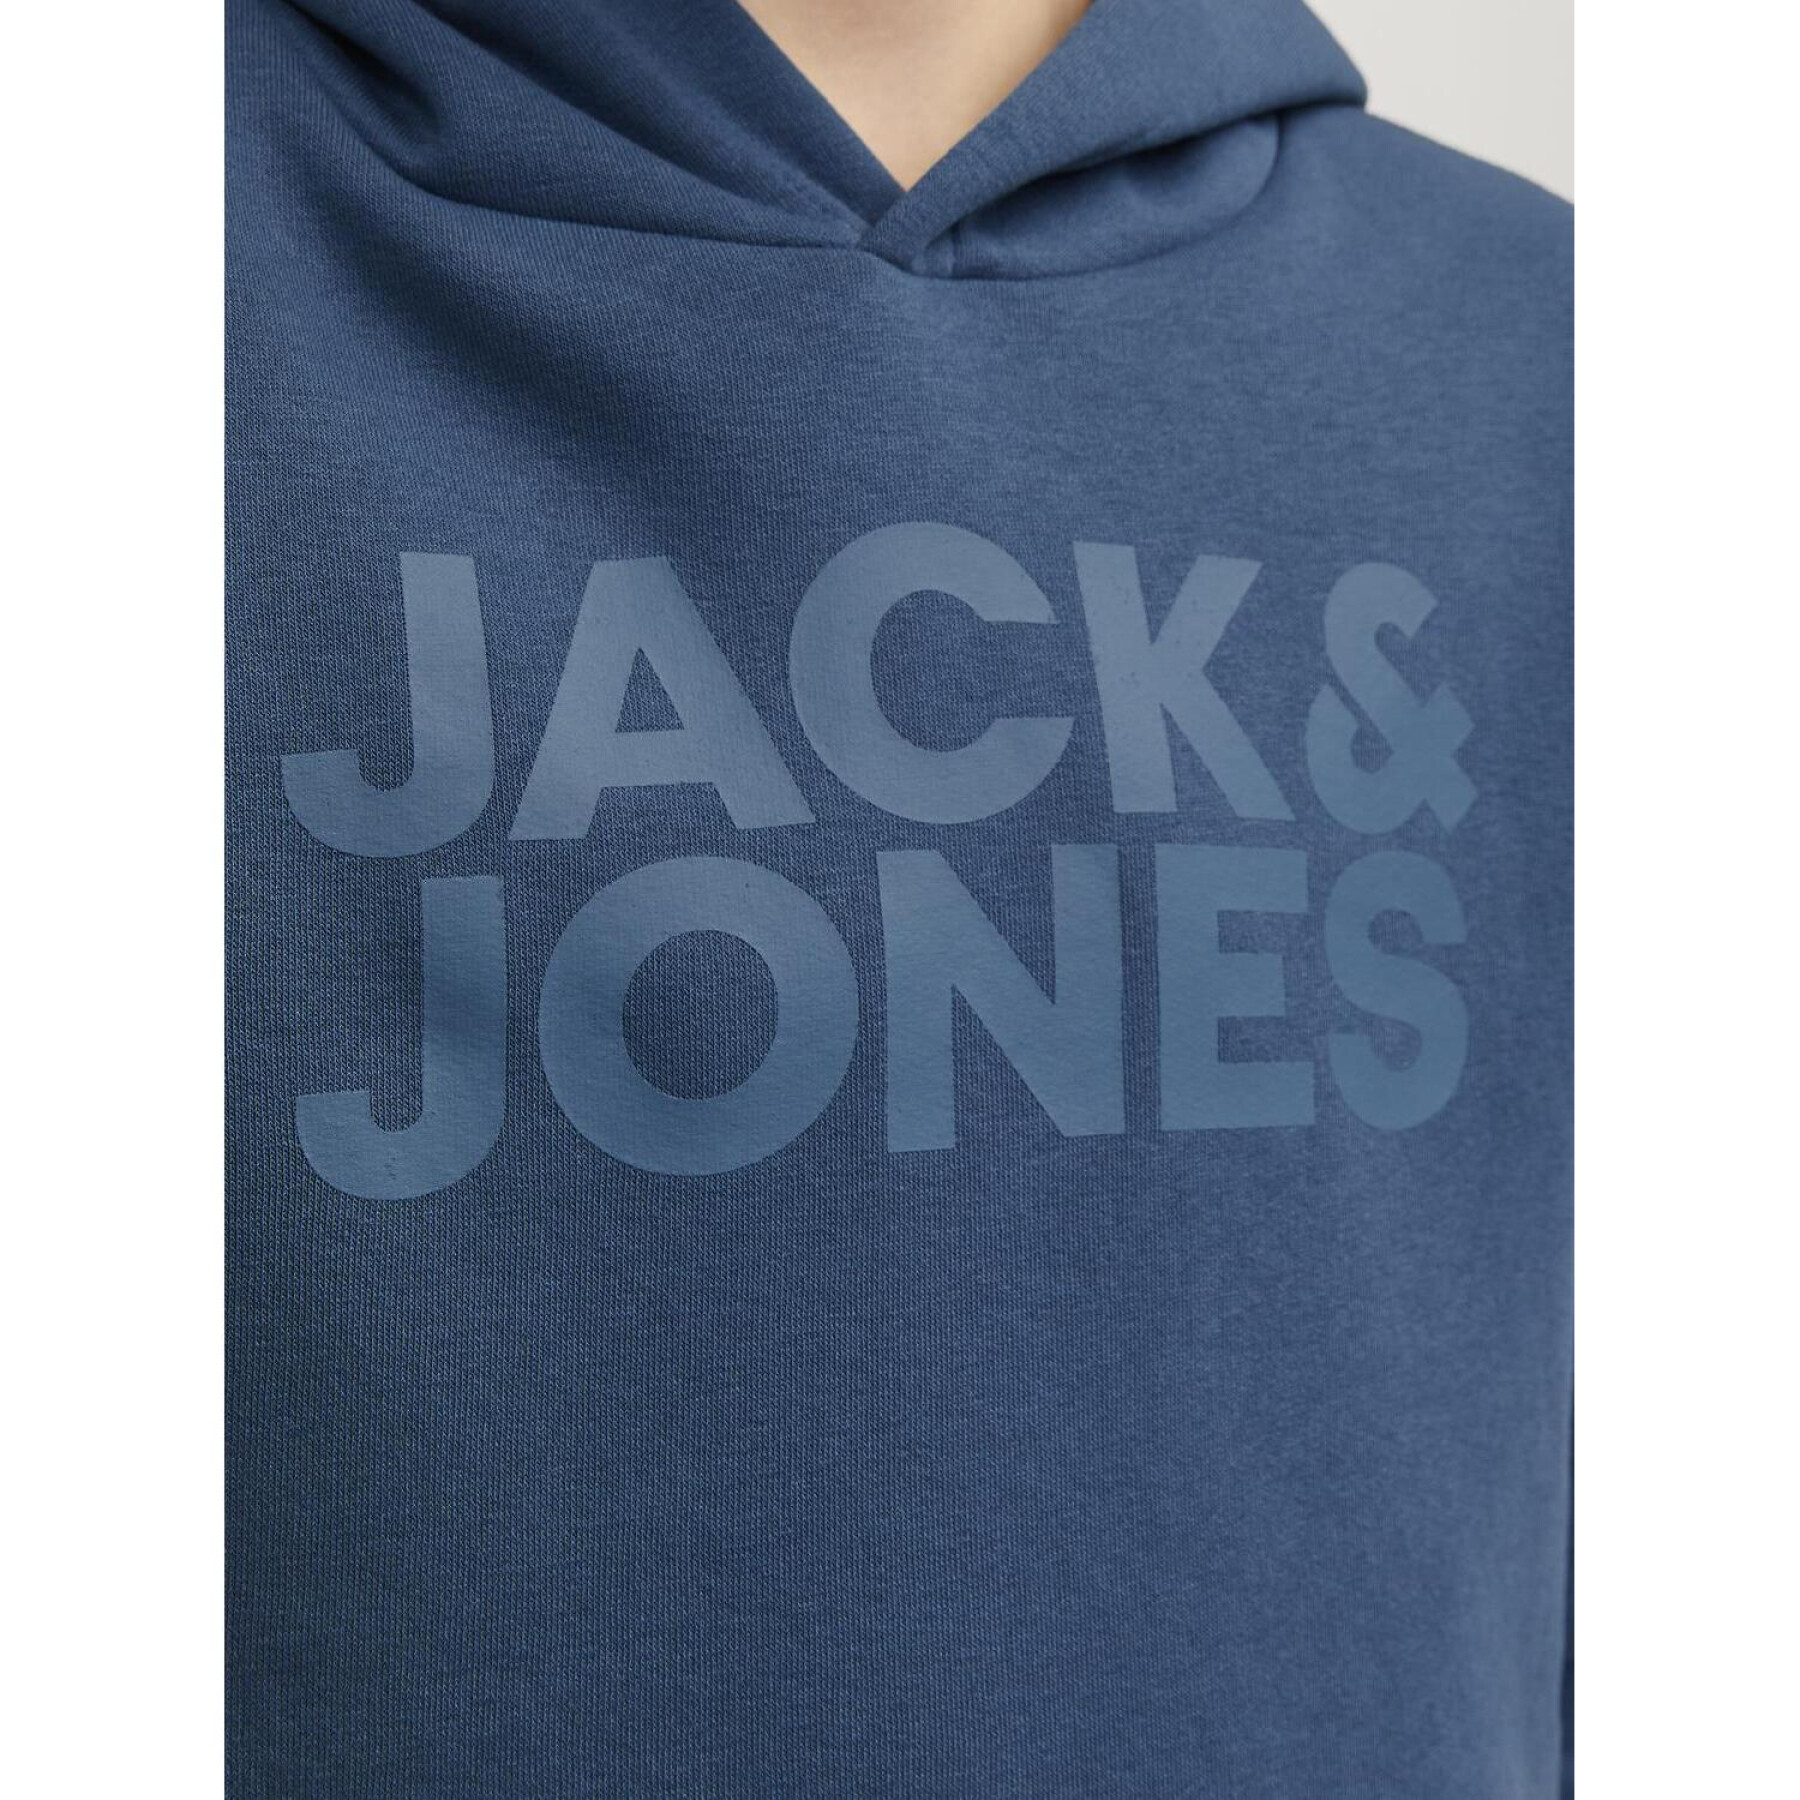 Sweater met capuchon en kinderlogo Jack & Jones Corp